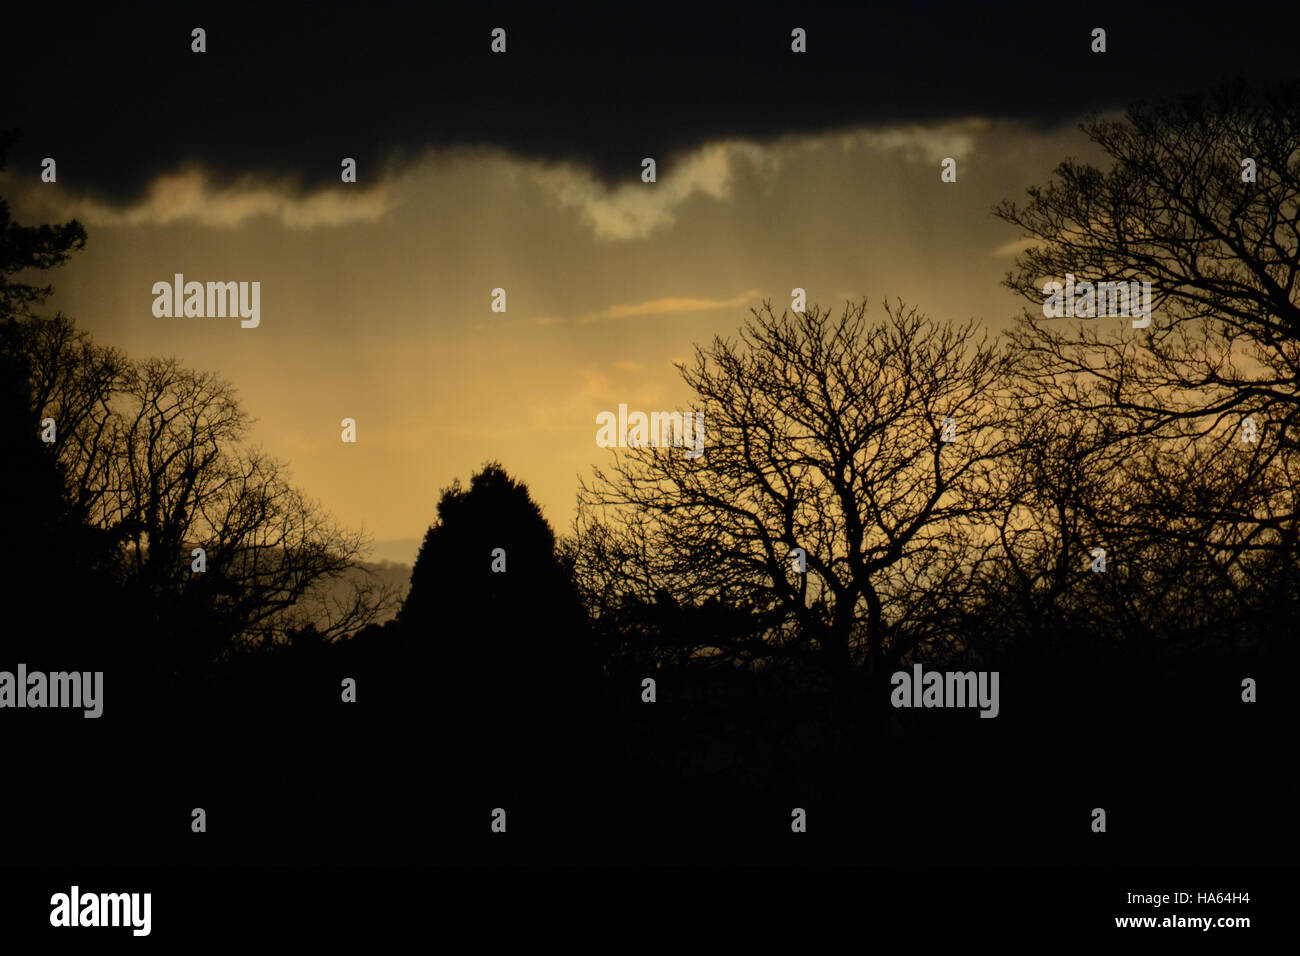 Cielo Sepia y siluetas de árboles invernales con las oscuras nubes como una tapa de cierre Foto de stock